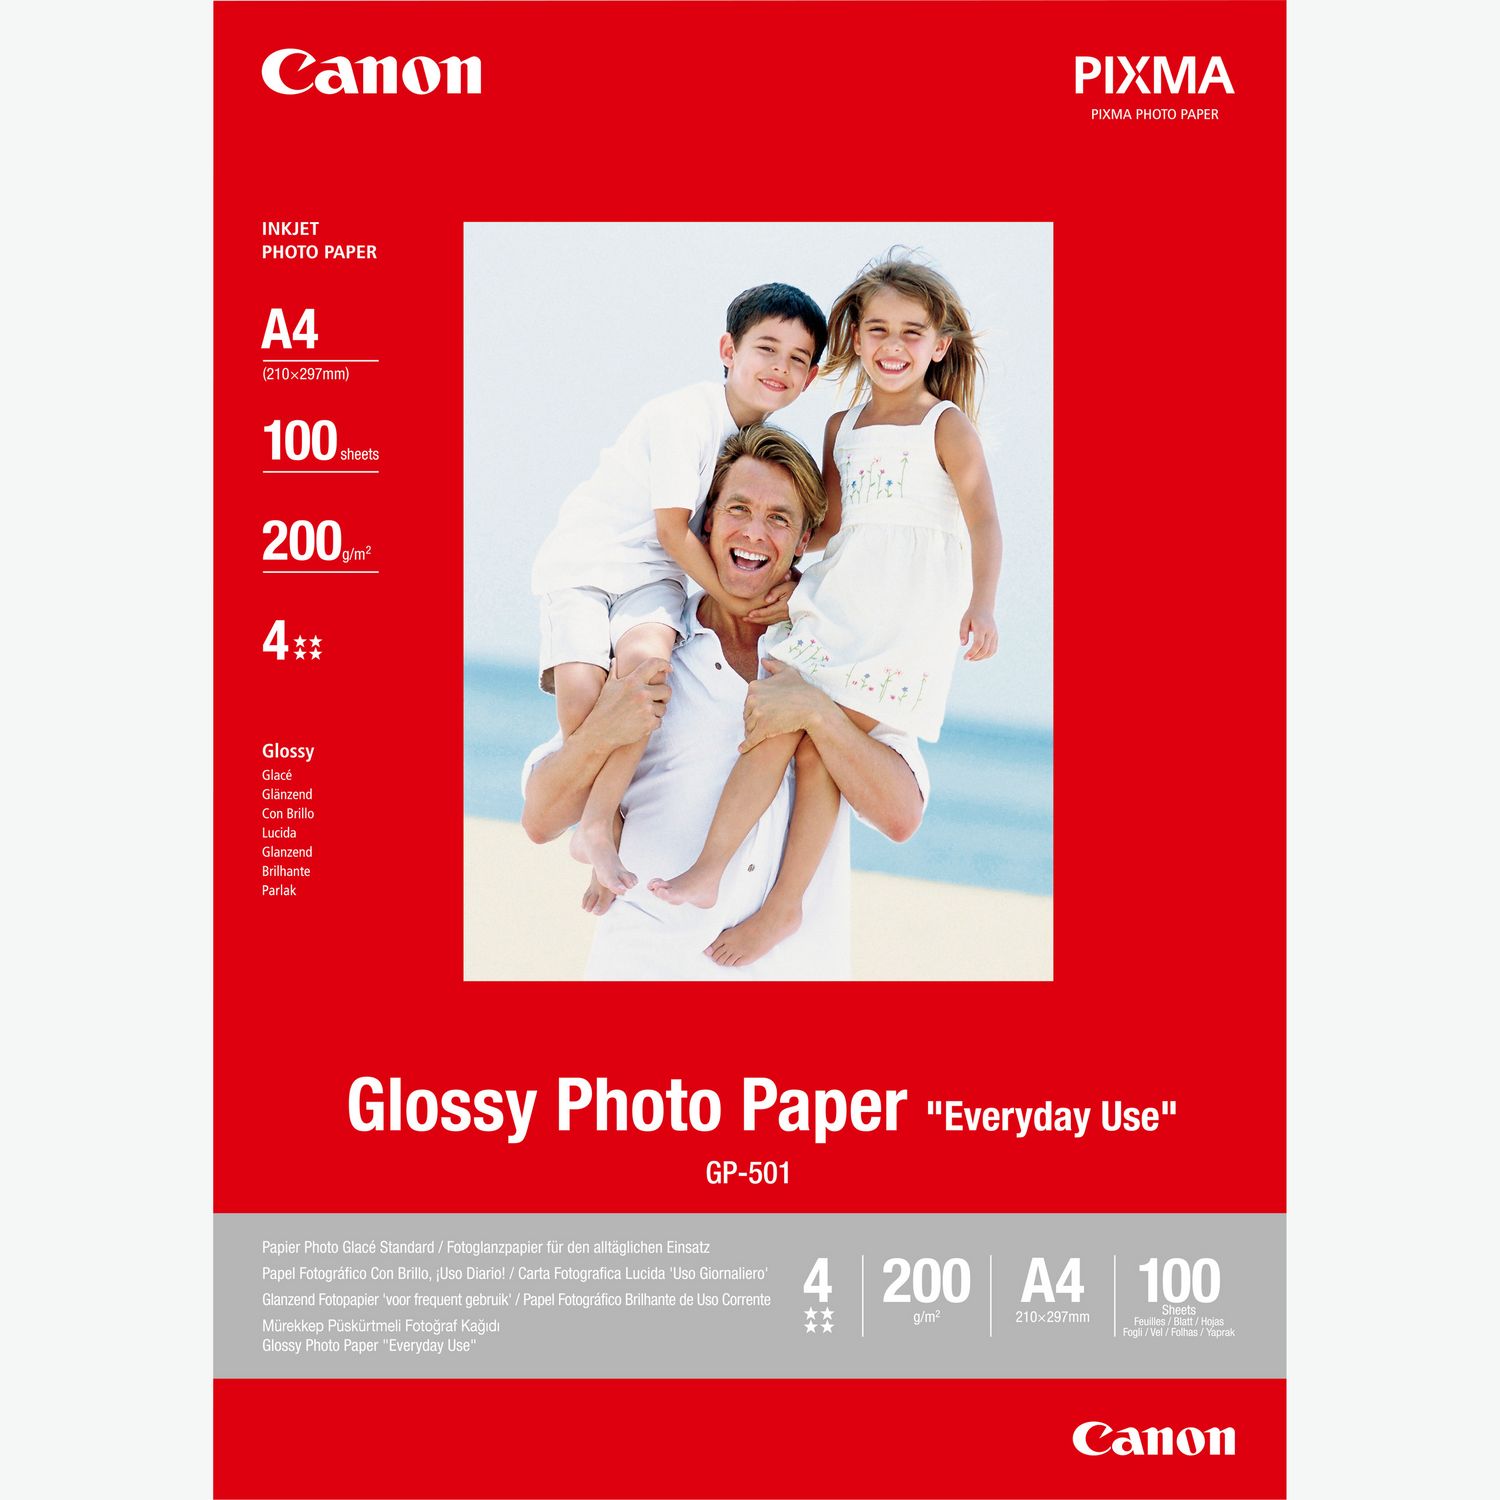 Canon 4977C006  Canon PIXMA TS3550i Inyección de tinta A4 4800 x 1200 DPI  Wifi